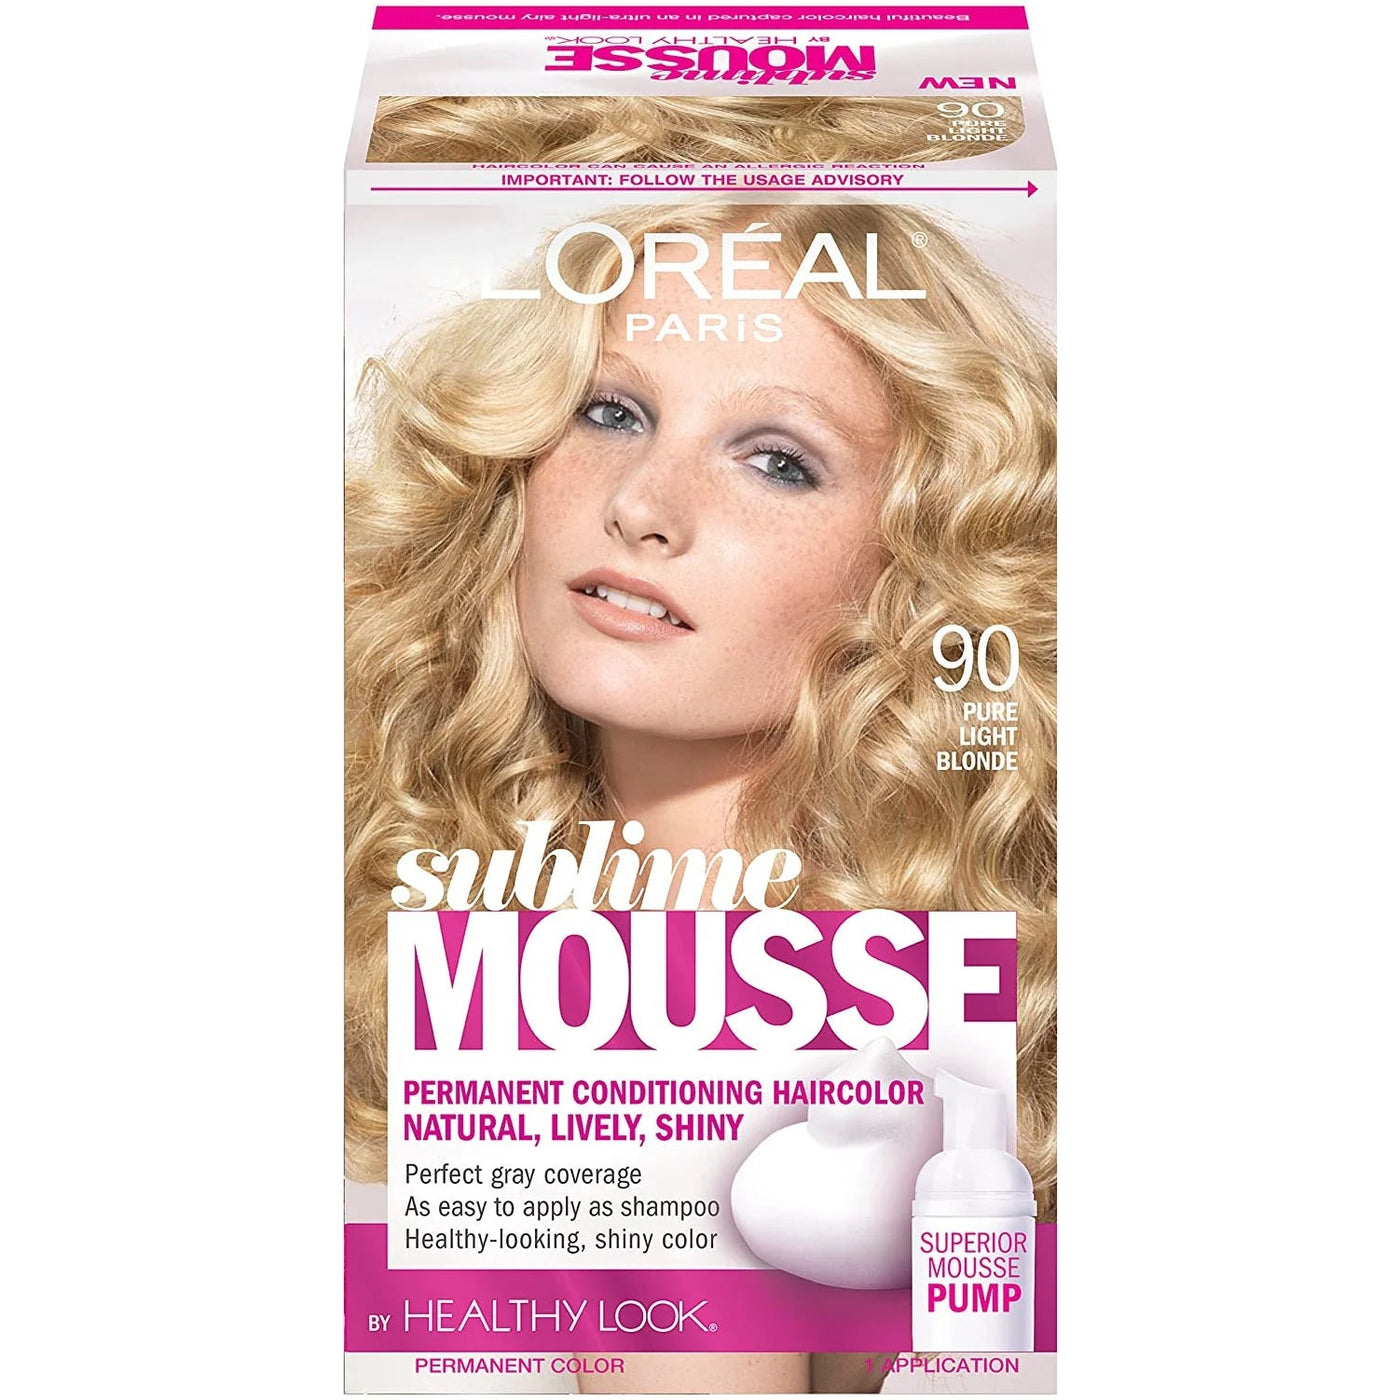 L'Oréal Sublime Mousse, 90 Pure Light Blonde - Just Closeouts Canada Inc.071249197226